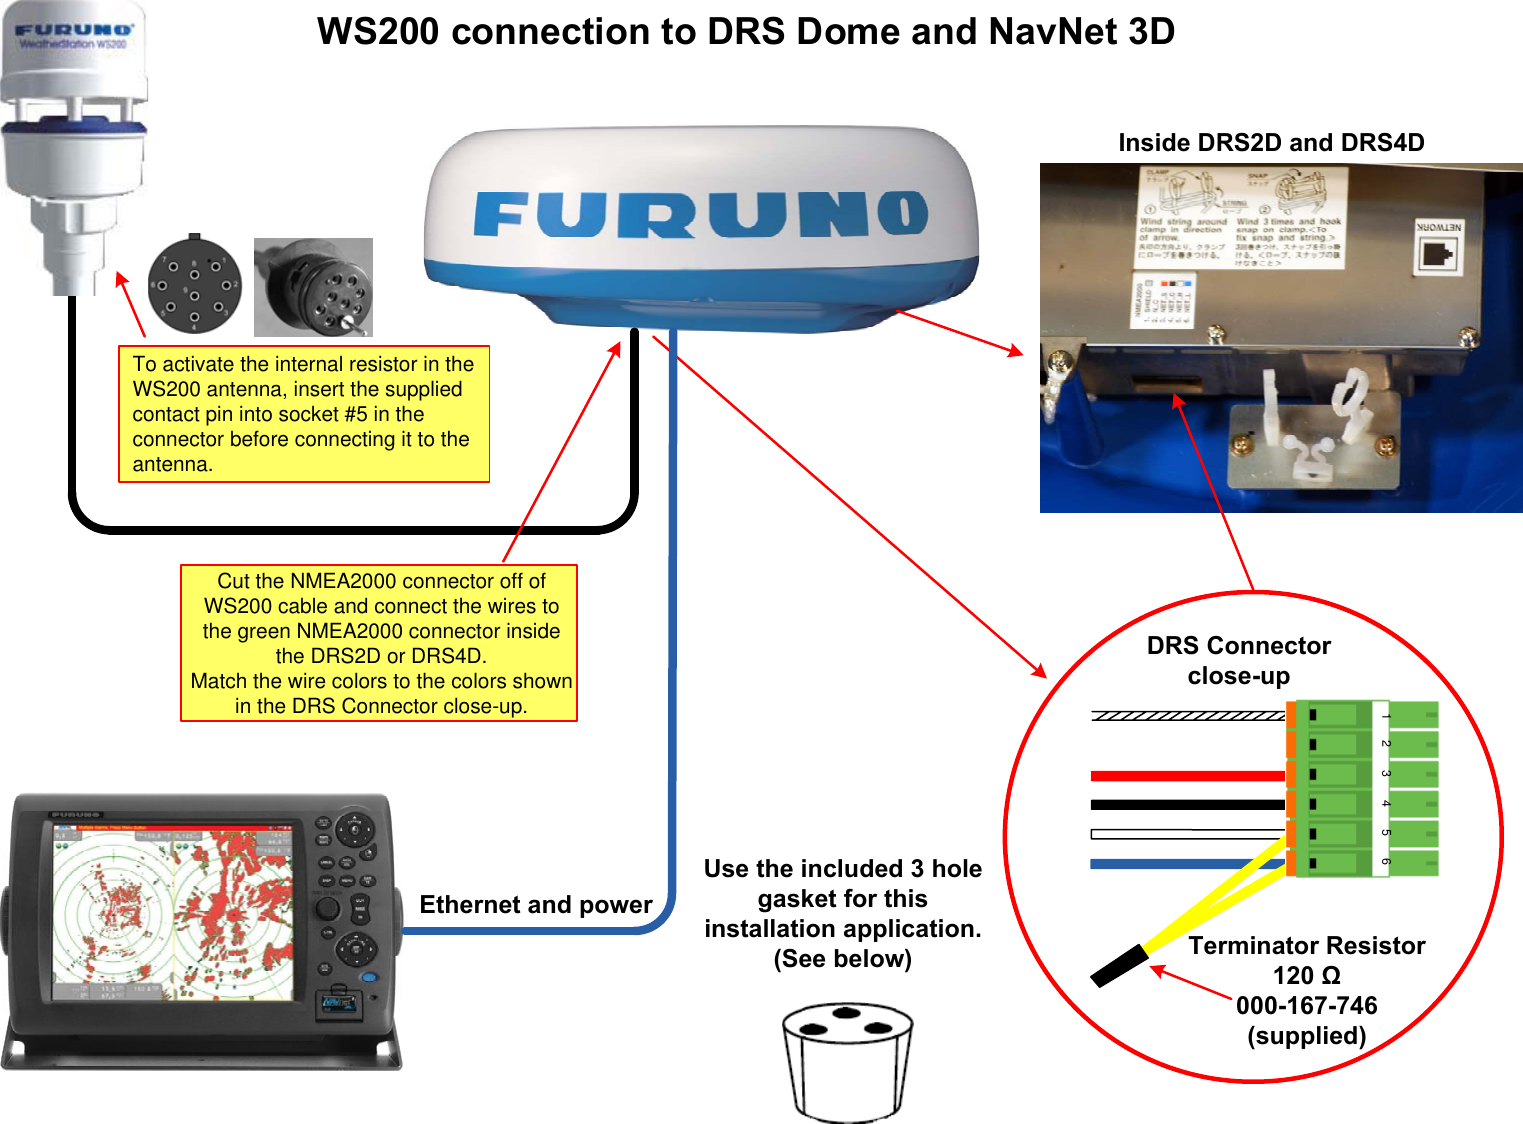 Page 2 of 5 - Furuno Furuno-Fi5002-Users-Manual- Visio-WS200 Direct Connection To NN3D  Furuno-fi5002-users-manual